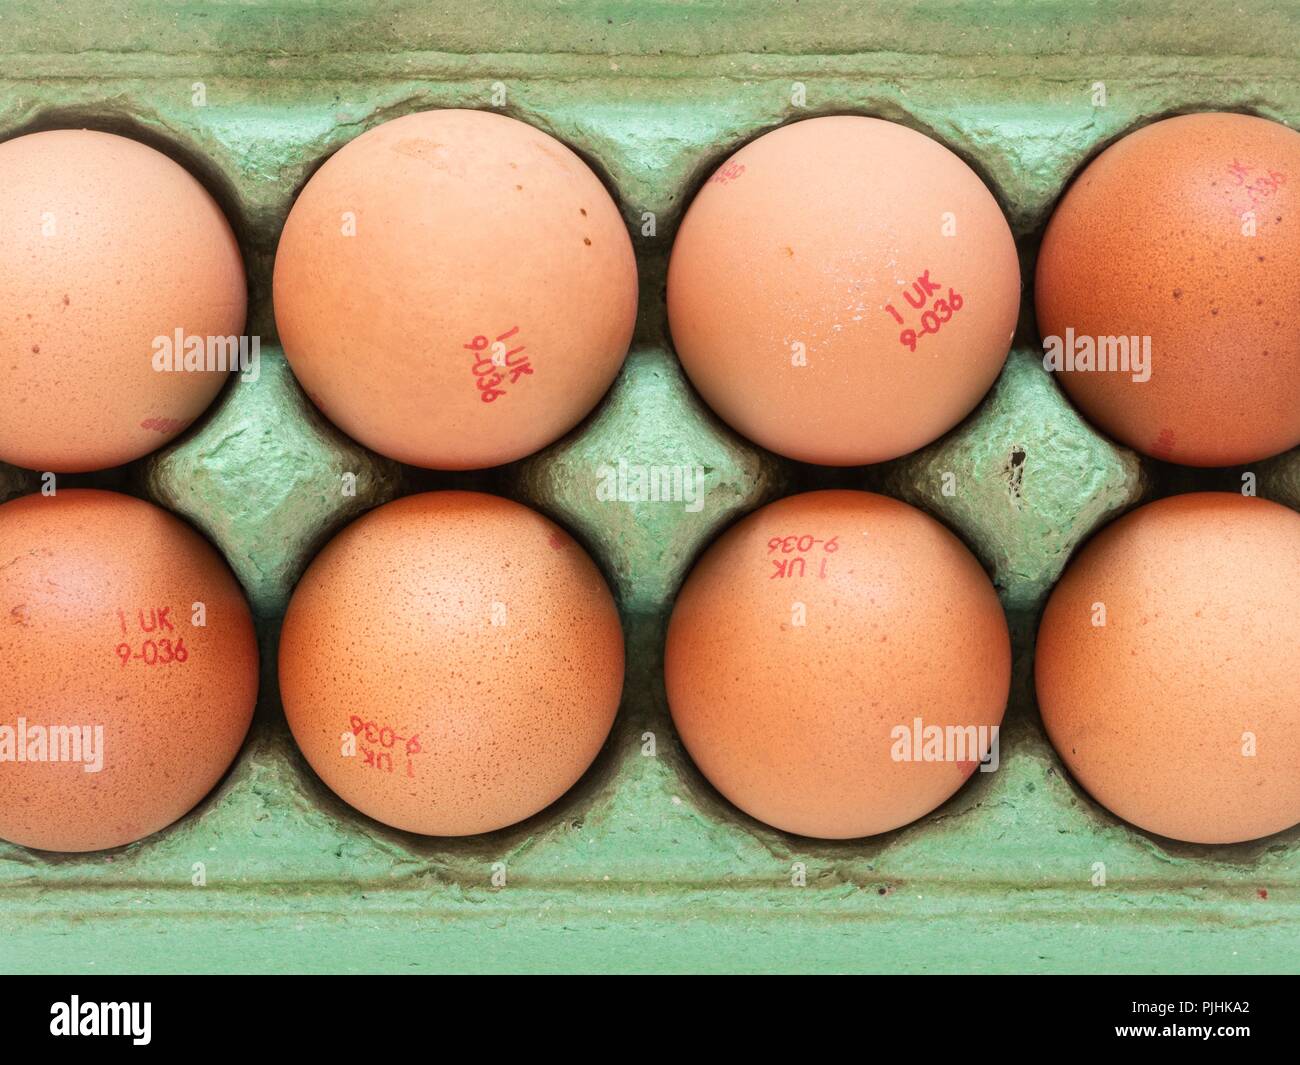 Mit Blick auf ein grünes ei Karton mit 8 Hennen Eier gefüllt Stockfoto